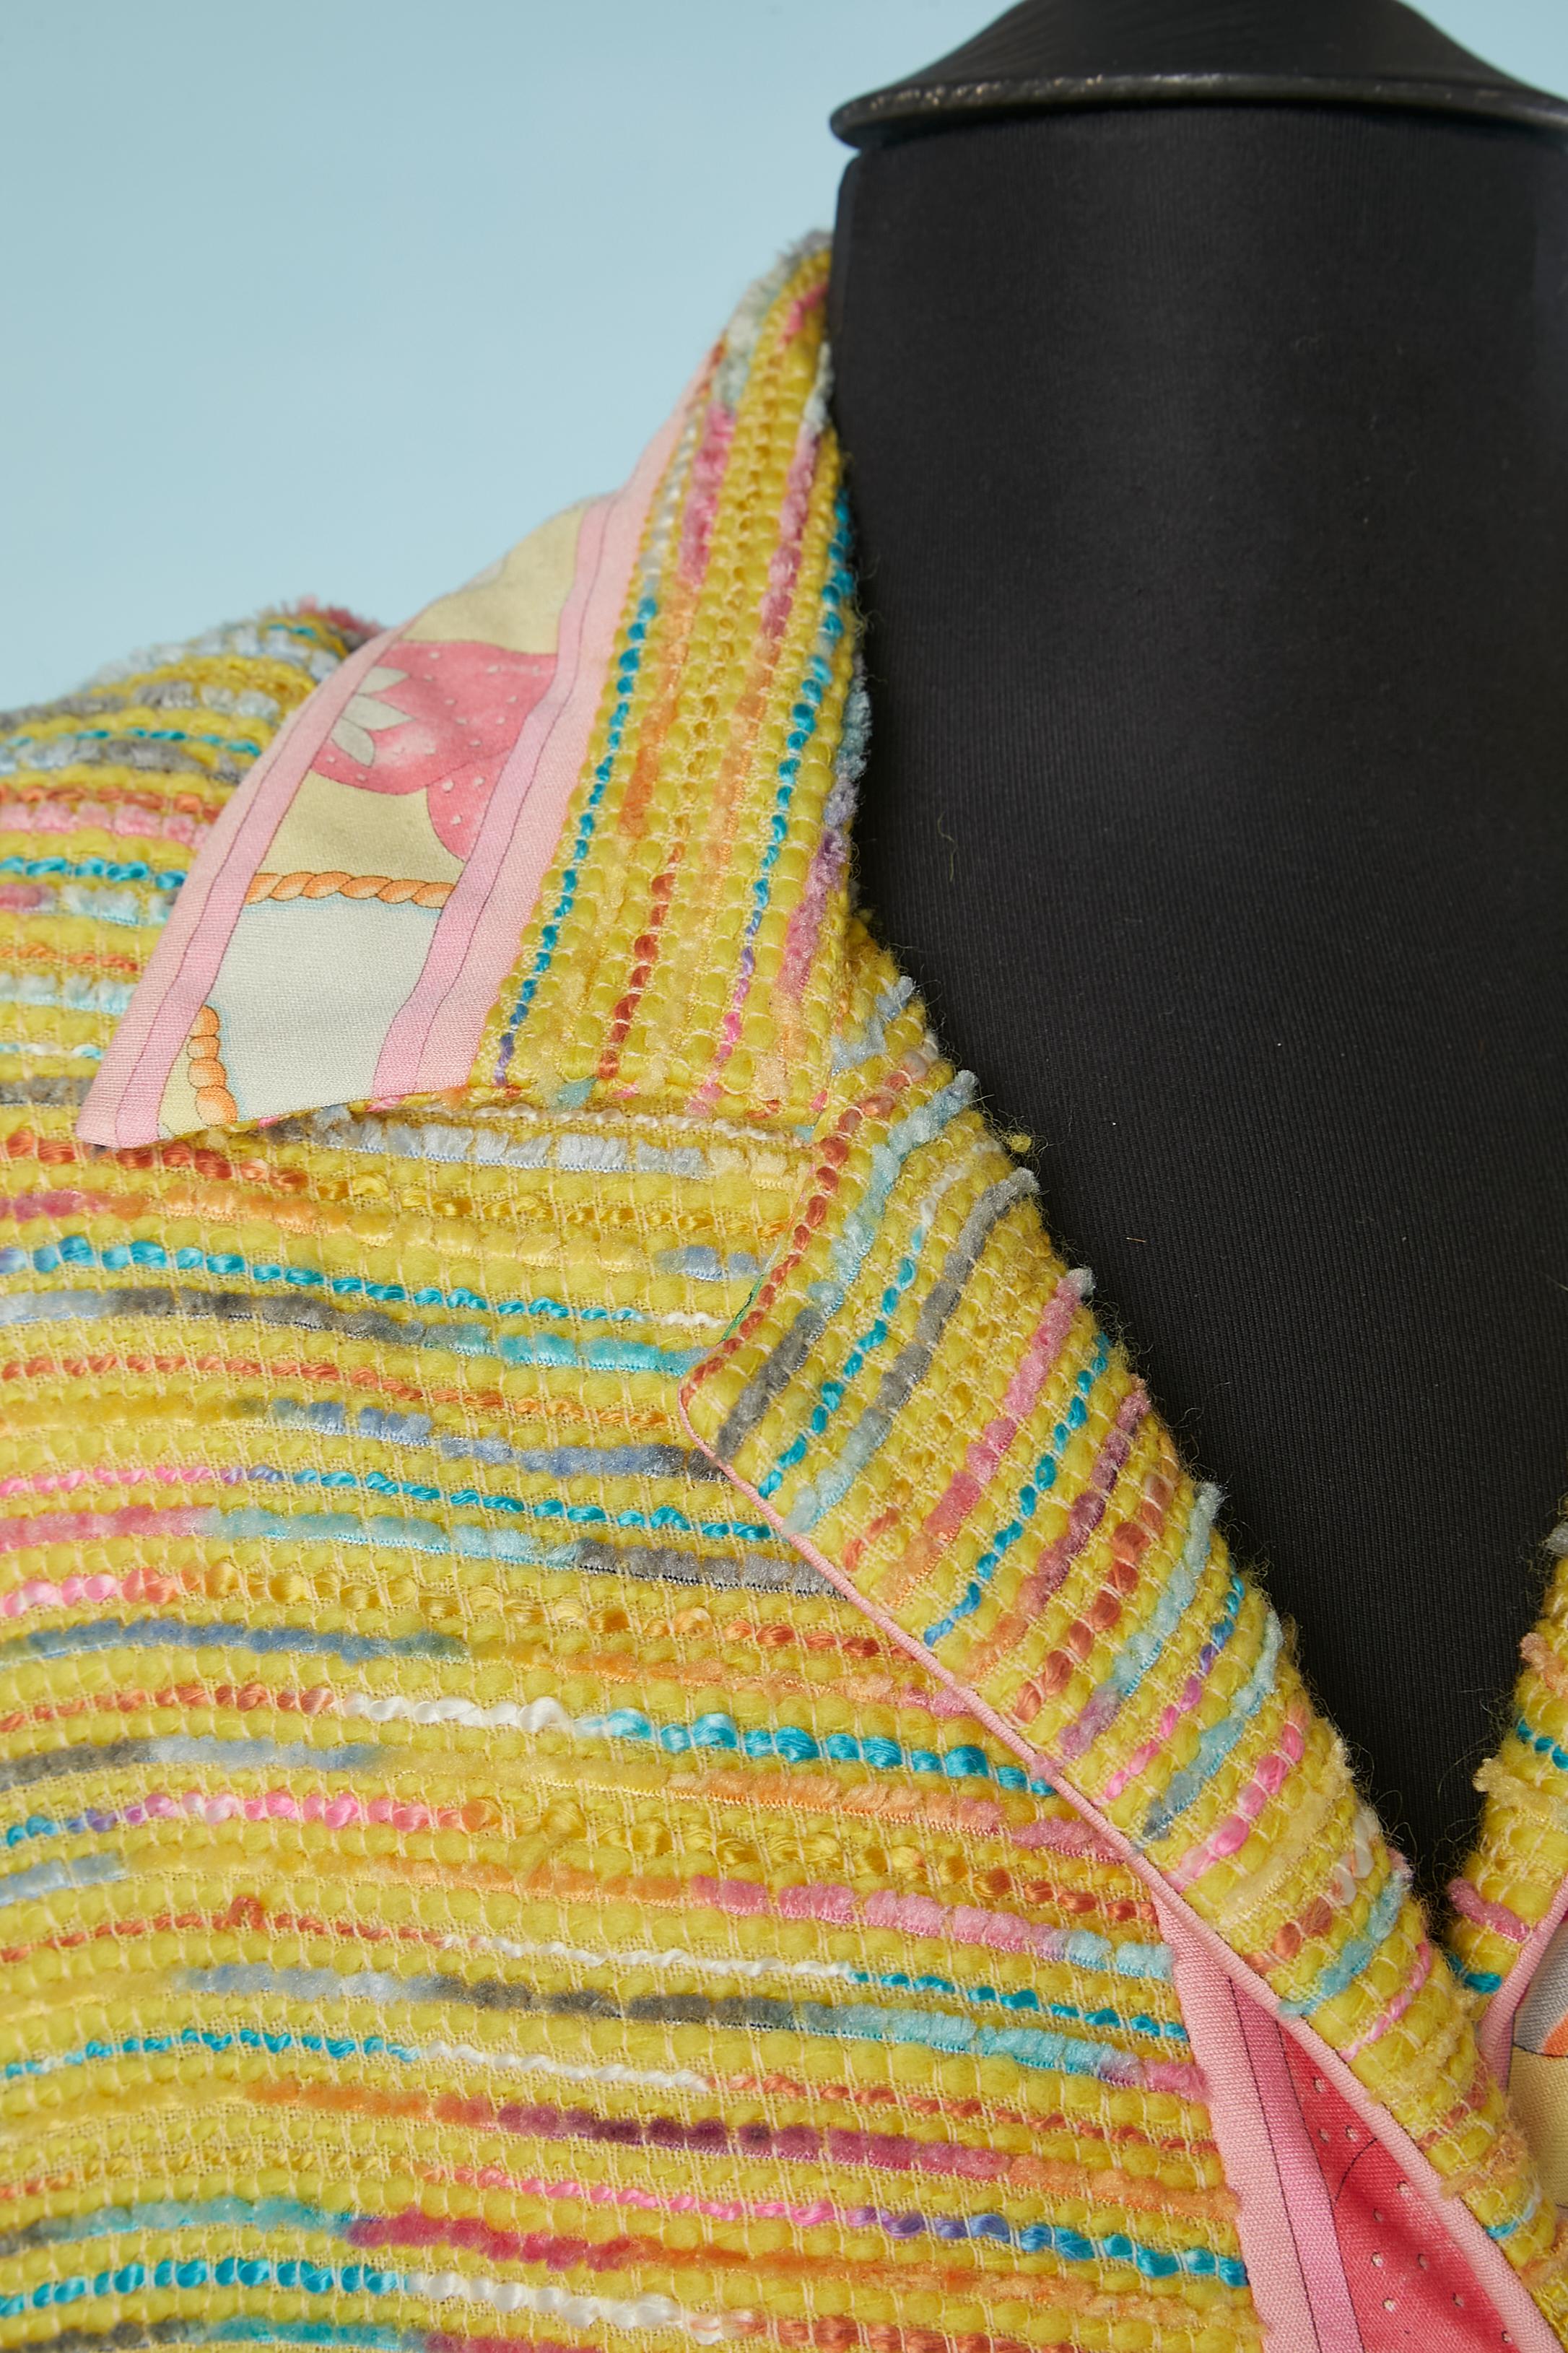 Robe longue en tweed multicolore à simple boutonnage  veste avec boutons de marque. Bord de la manche et patte de boutonnage imprimés en jersey de soie. Doublure en soie jaune. 
TAILLE 46 (Fr) 16 (Us) XL 